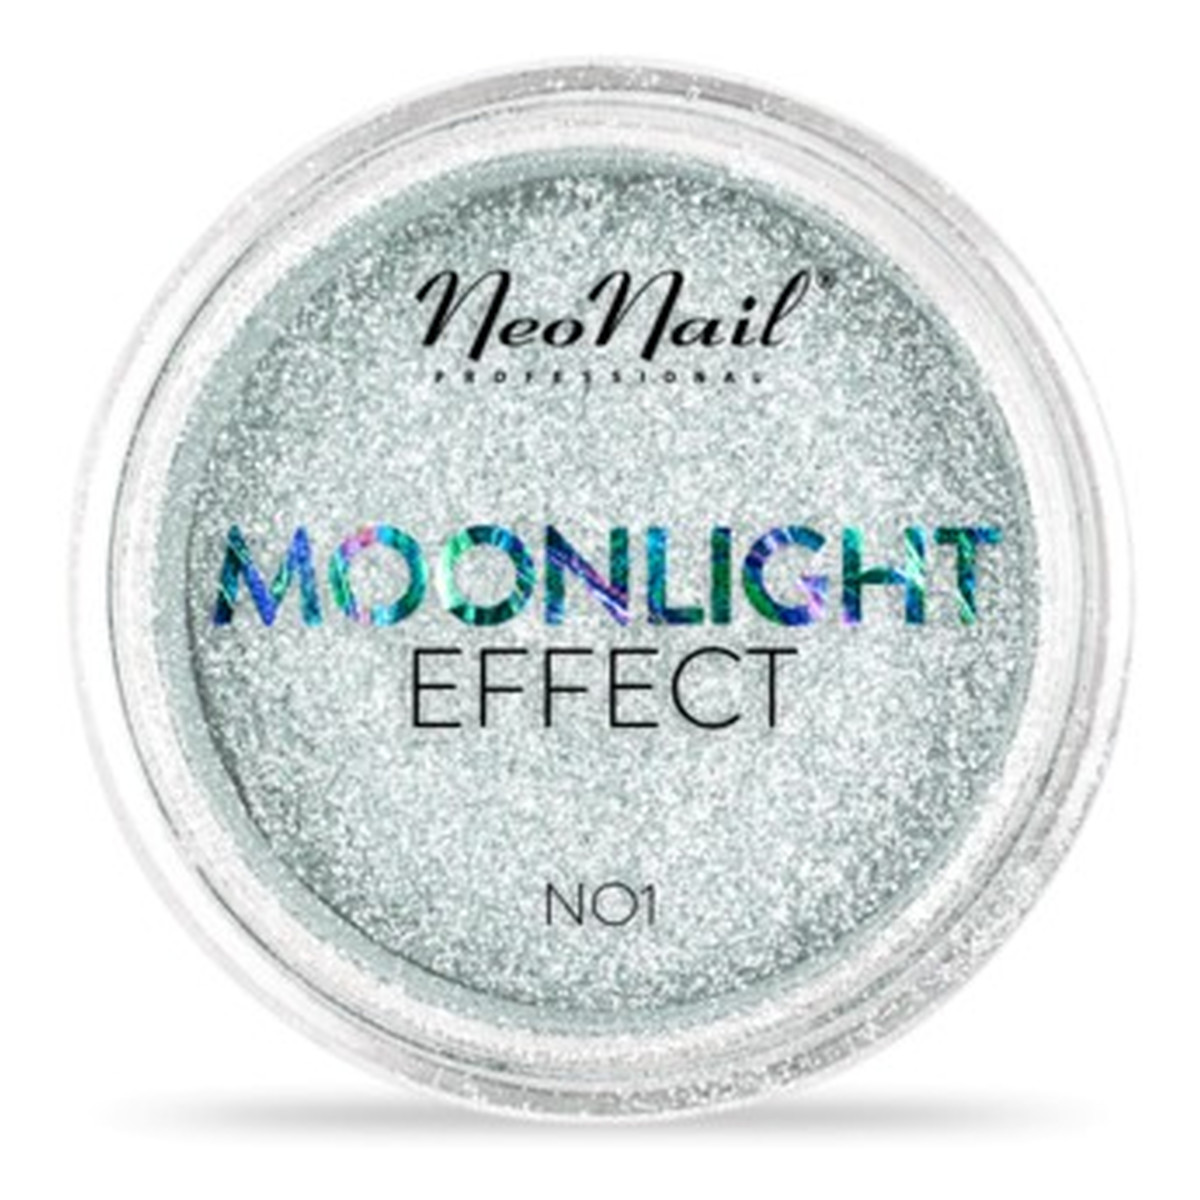 NeoNail Puder Moonlight Effect 2g